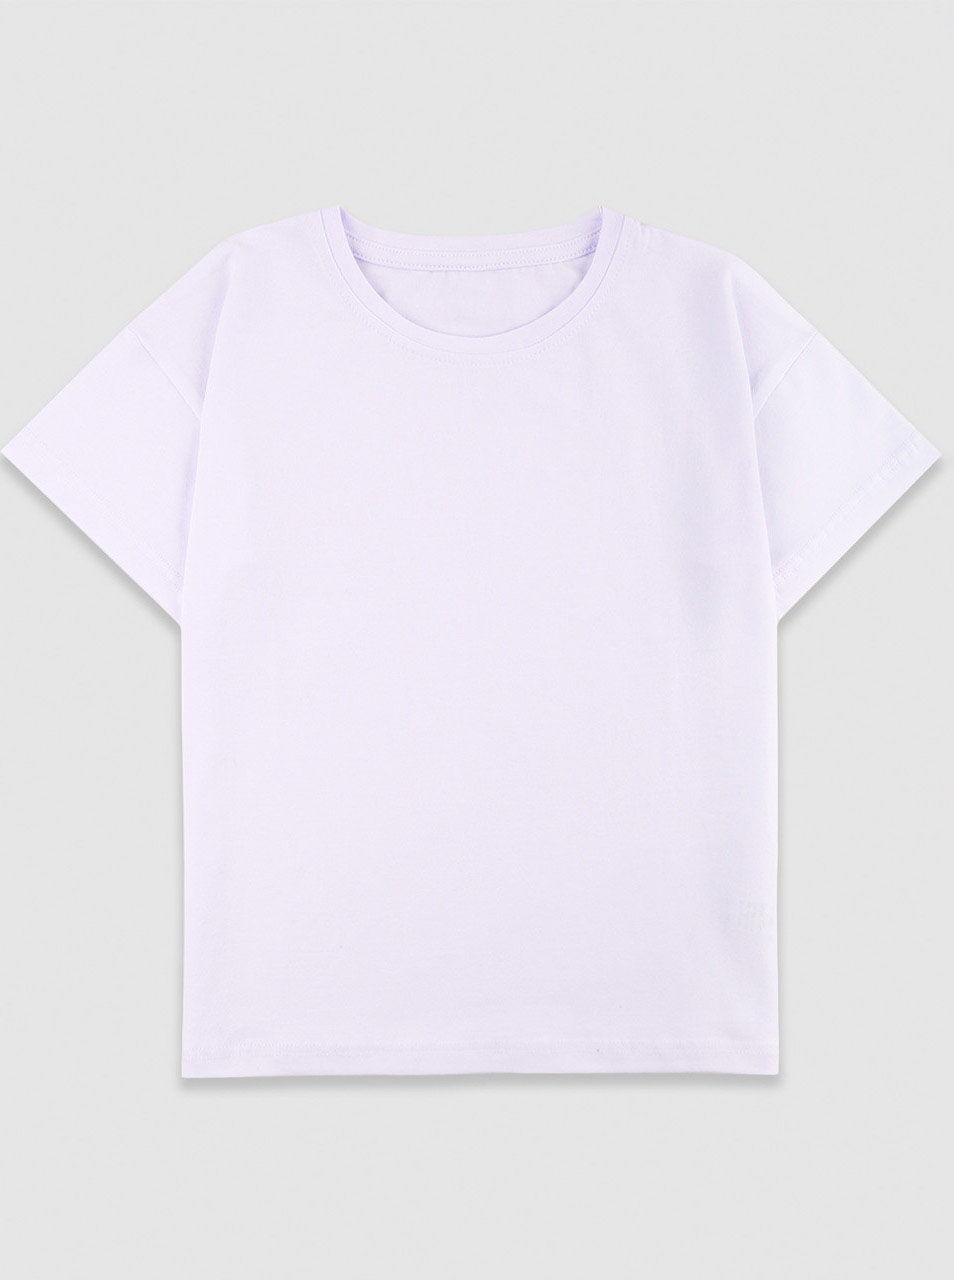 Базовая футболка для девочки Фламинго белая 778-412 - цена